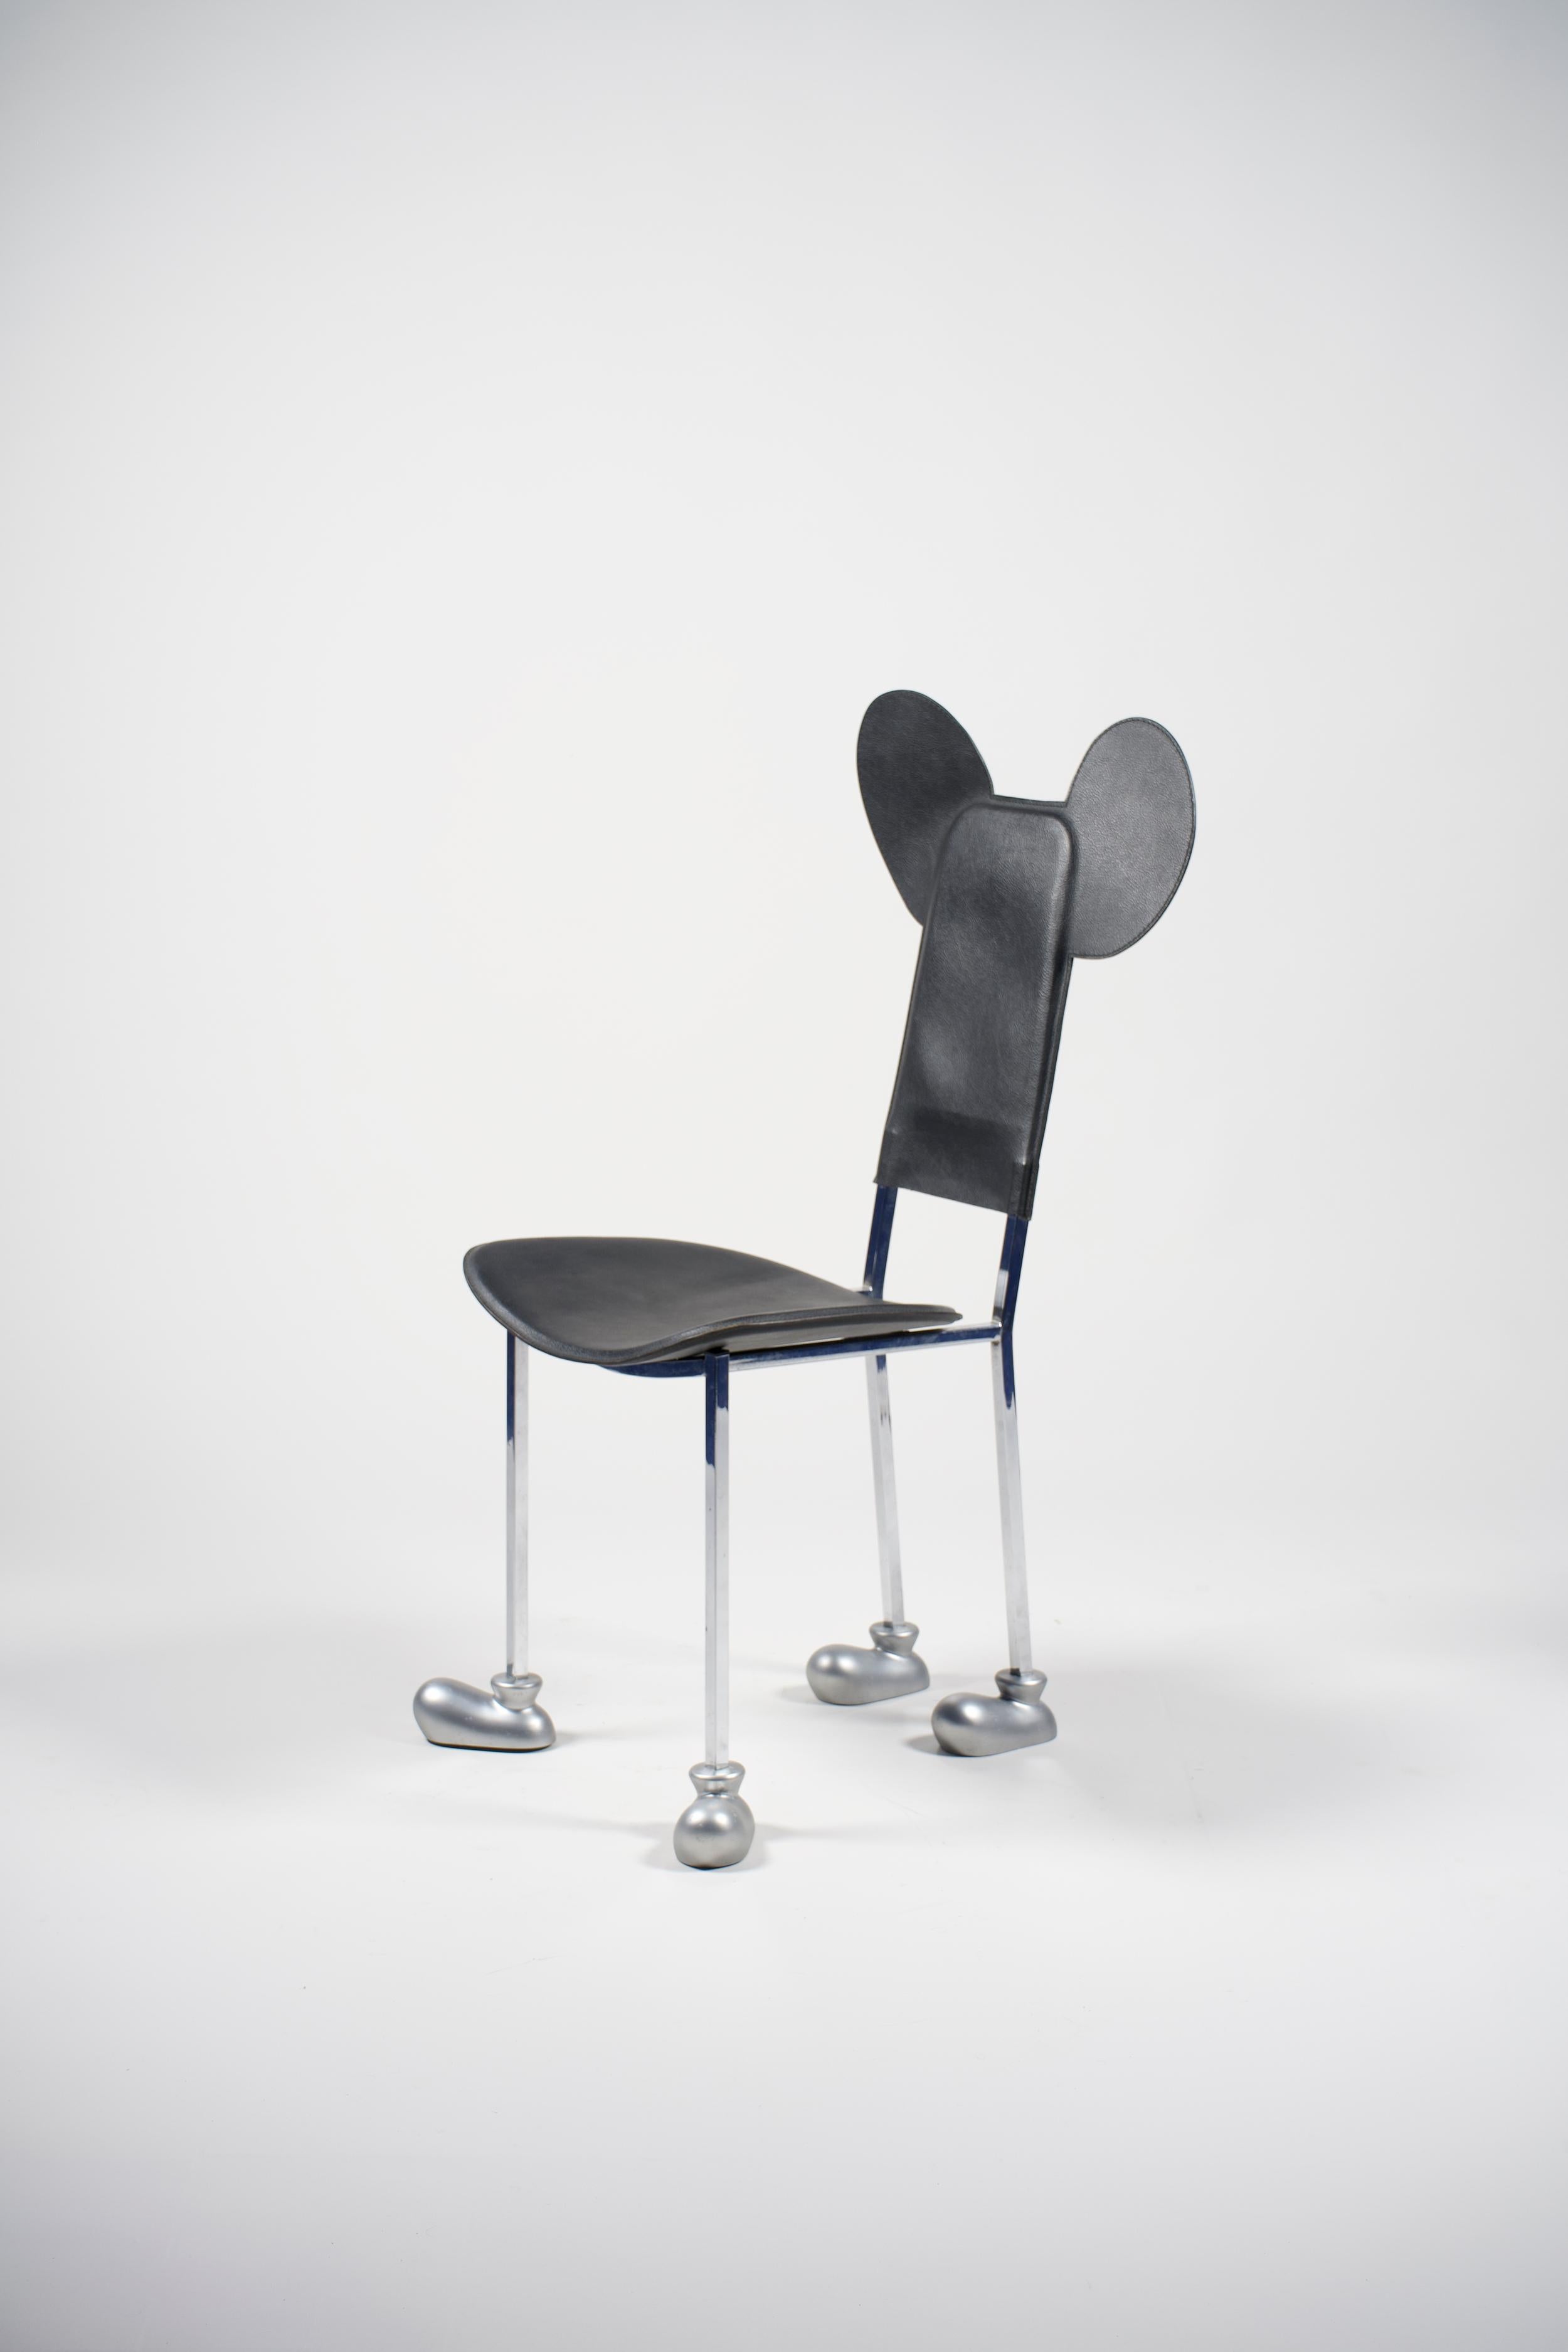 Garriris-Stuhl von Javier Mariscal, hergestellt von Akaba im Jahr 1987, restauriert und wiederhergestellt von dem Architekten und Designer Stefano Colli (auch Sammler und Kurator von @goodgoodstefano).

In den 1970er Jahren, bevor er Möbel